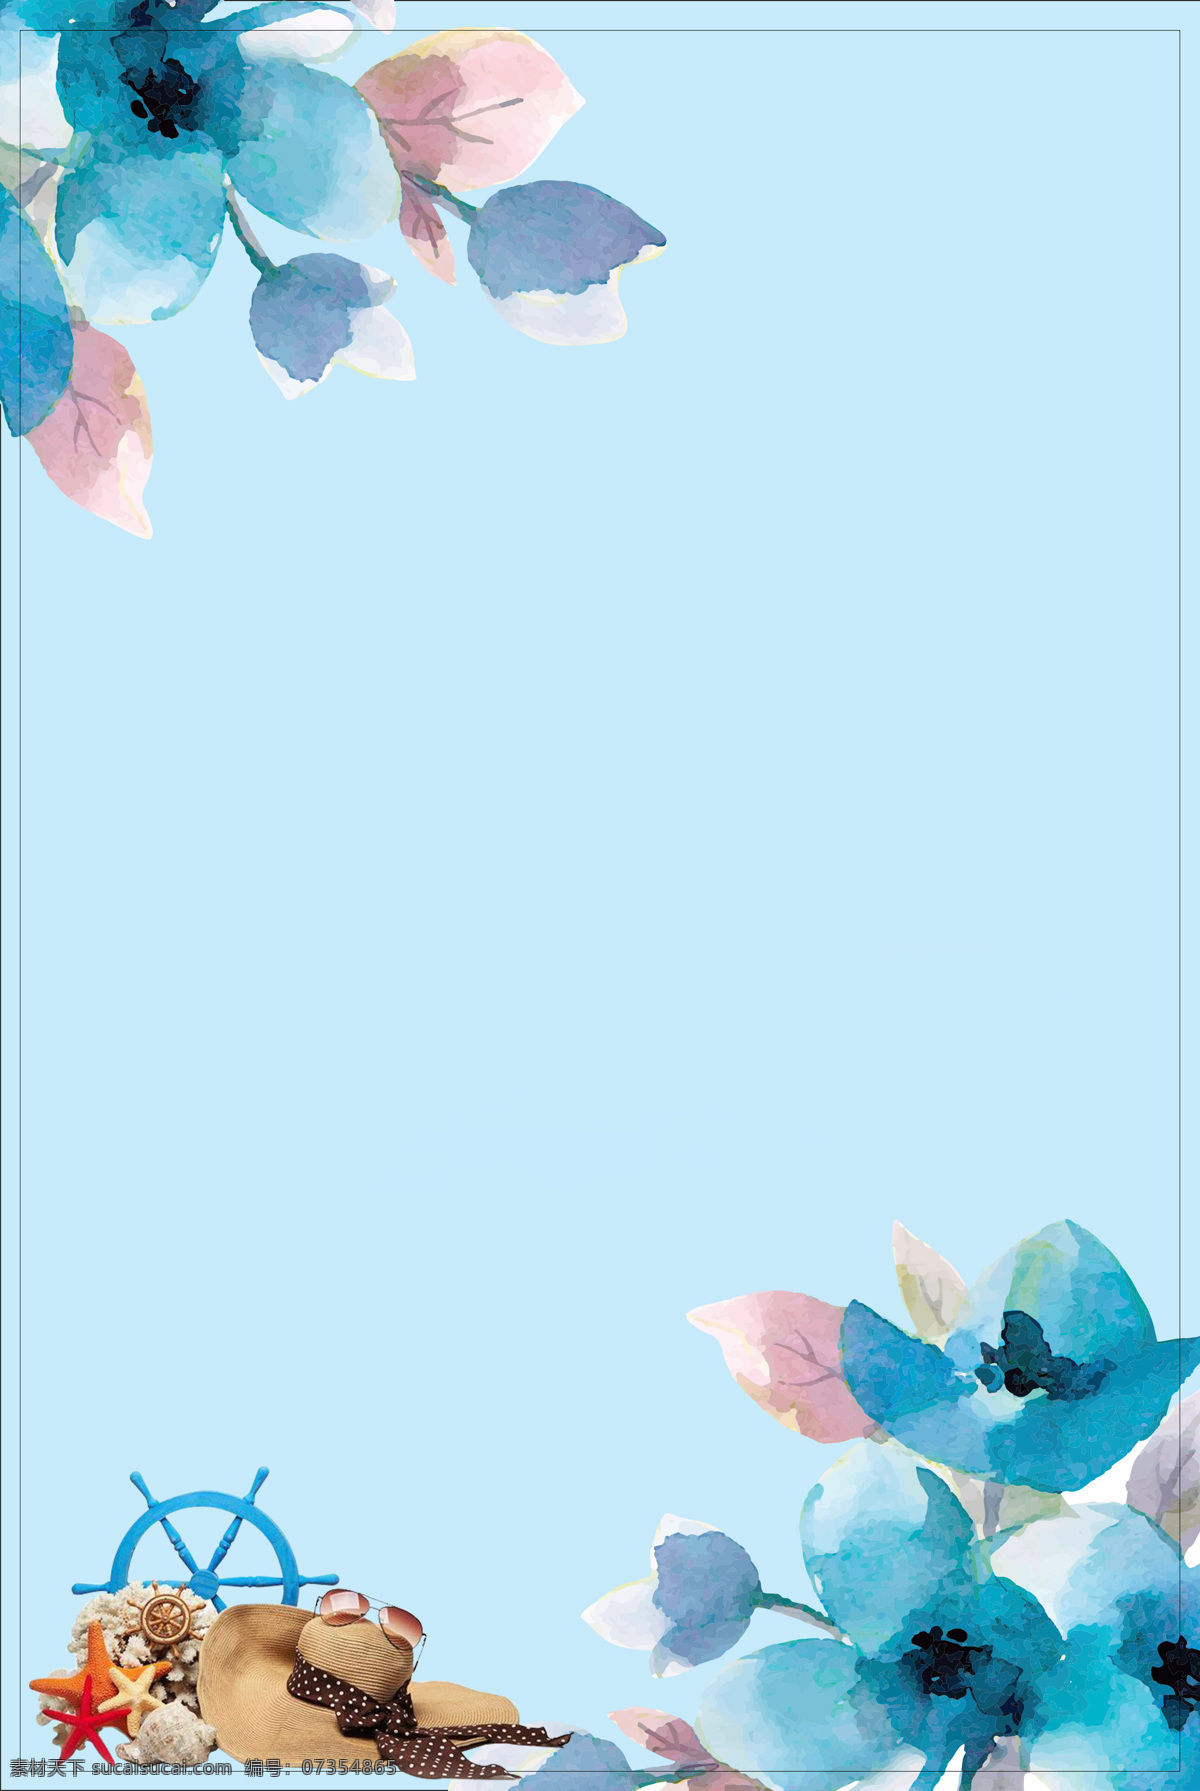 蓝色 花朵 dm 单 背景 新款上市 抽象背景 时尚背景 夏装新品上市 水彩背景 抽象艺术 水墨印花 广告背景图 新品背景 新品展板